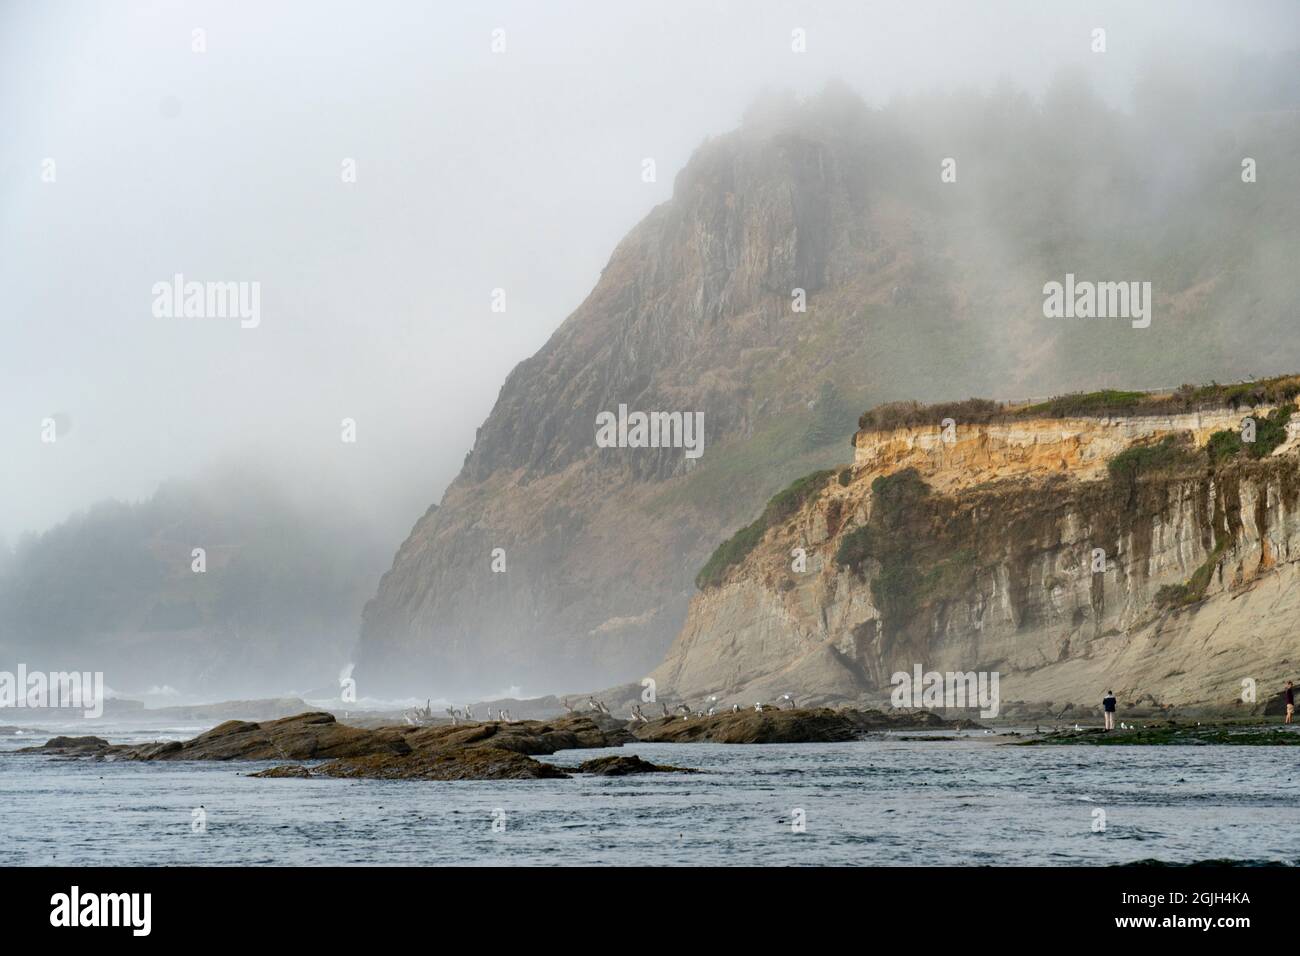 Le promontori resistono alle onde sulla costa dell'Oregon, USA. L'alto è costituito da basalto; quello inferiore presenta arenaria inclinata sotto una terrazza marina. Foto Stock